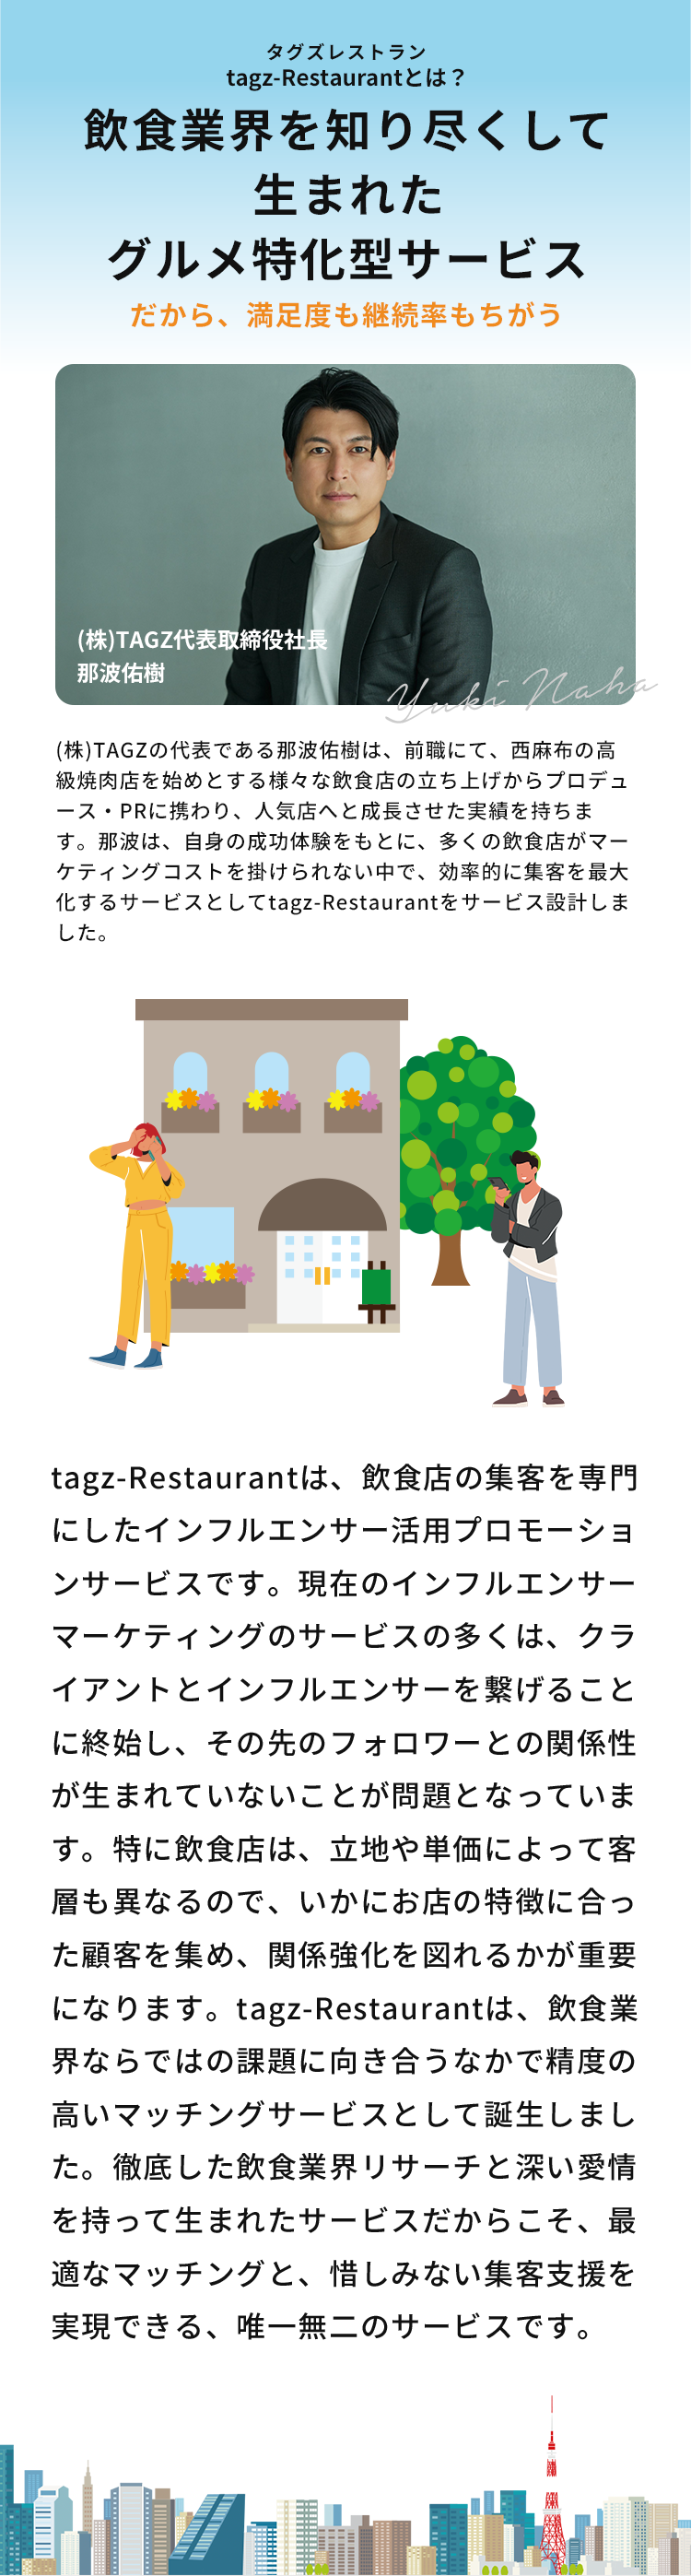 tagz-Restaurantは、飲食店の集客を専門にしたインフルエンサー活用プロモーションサービスです。​